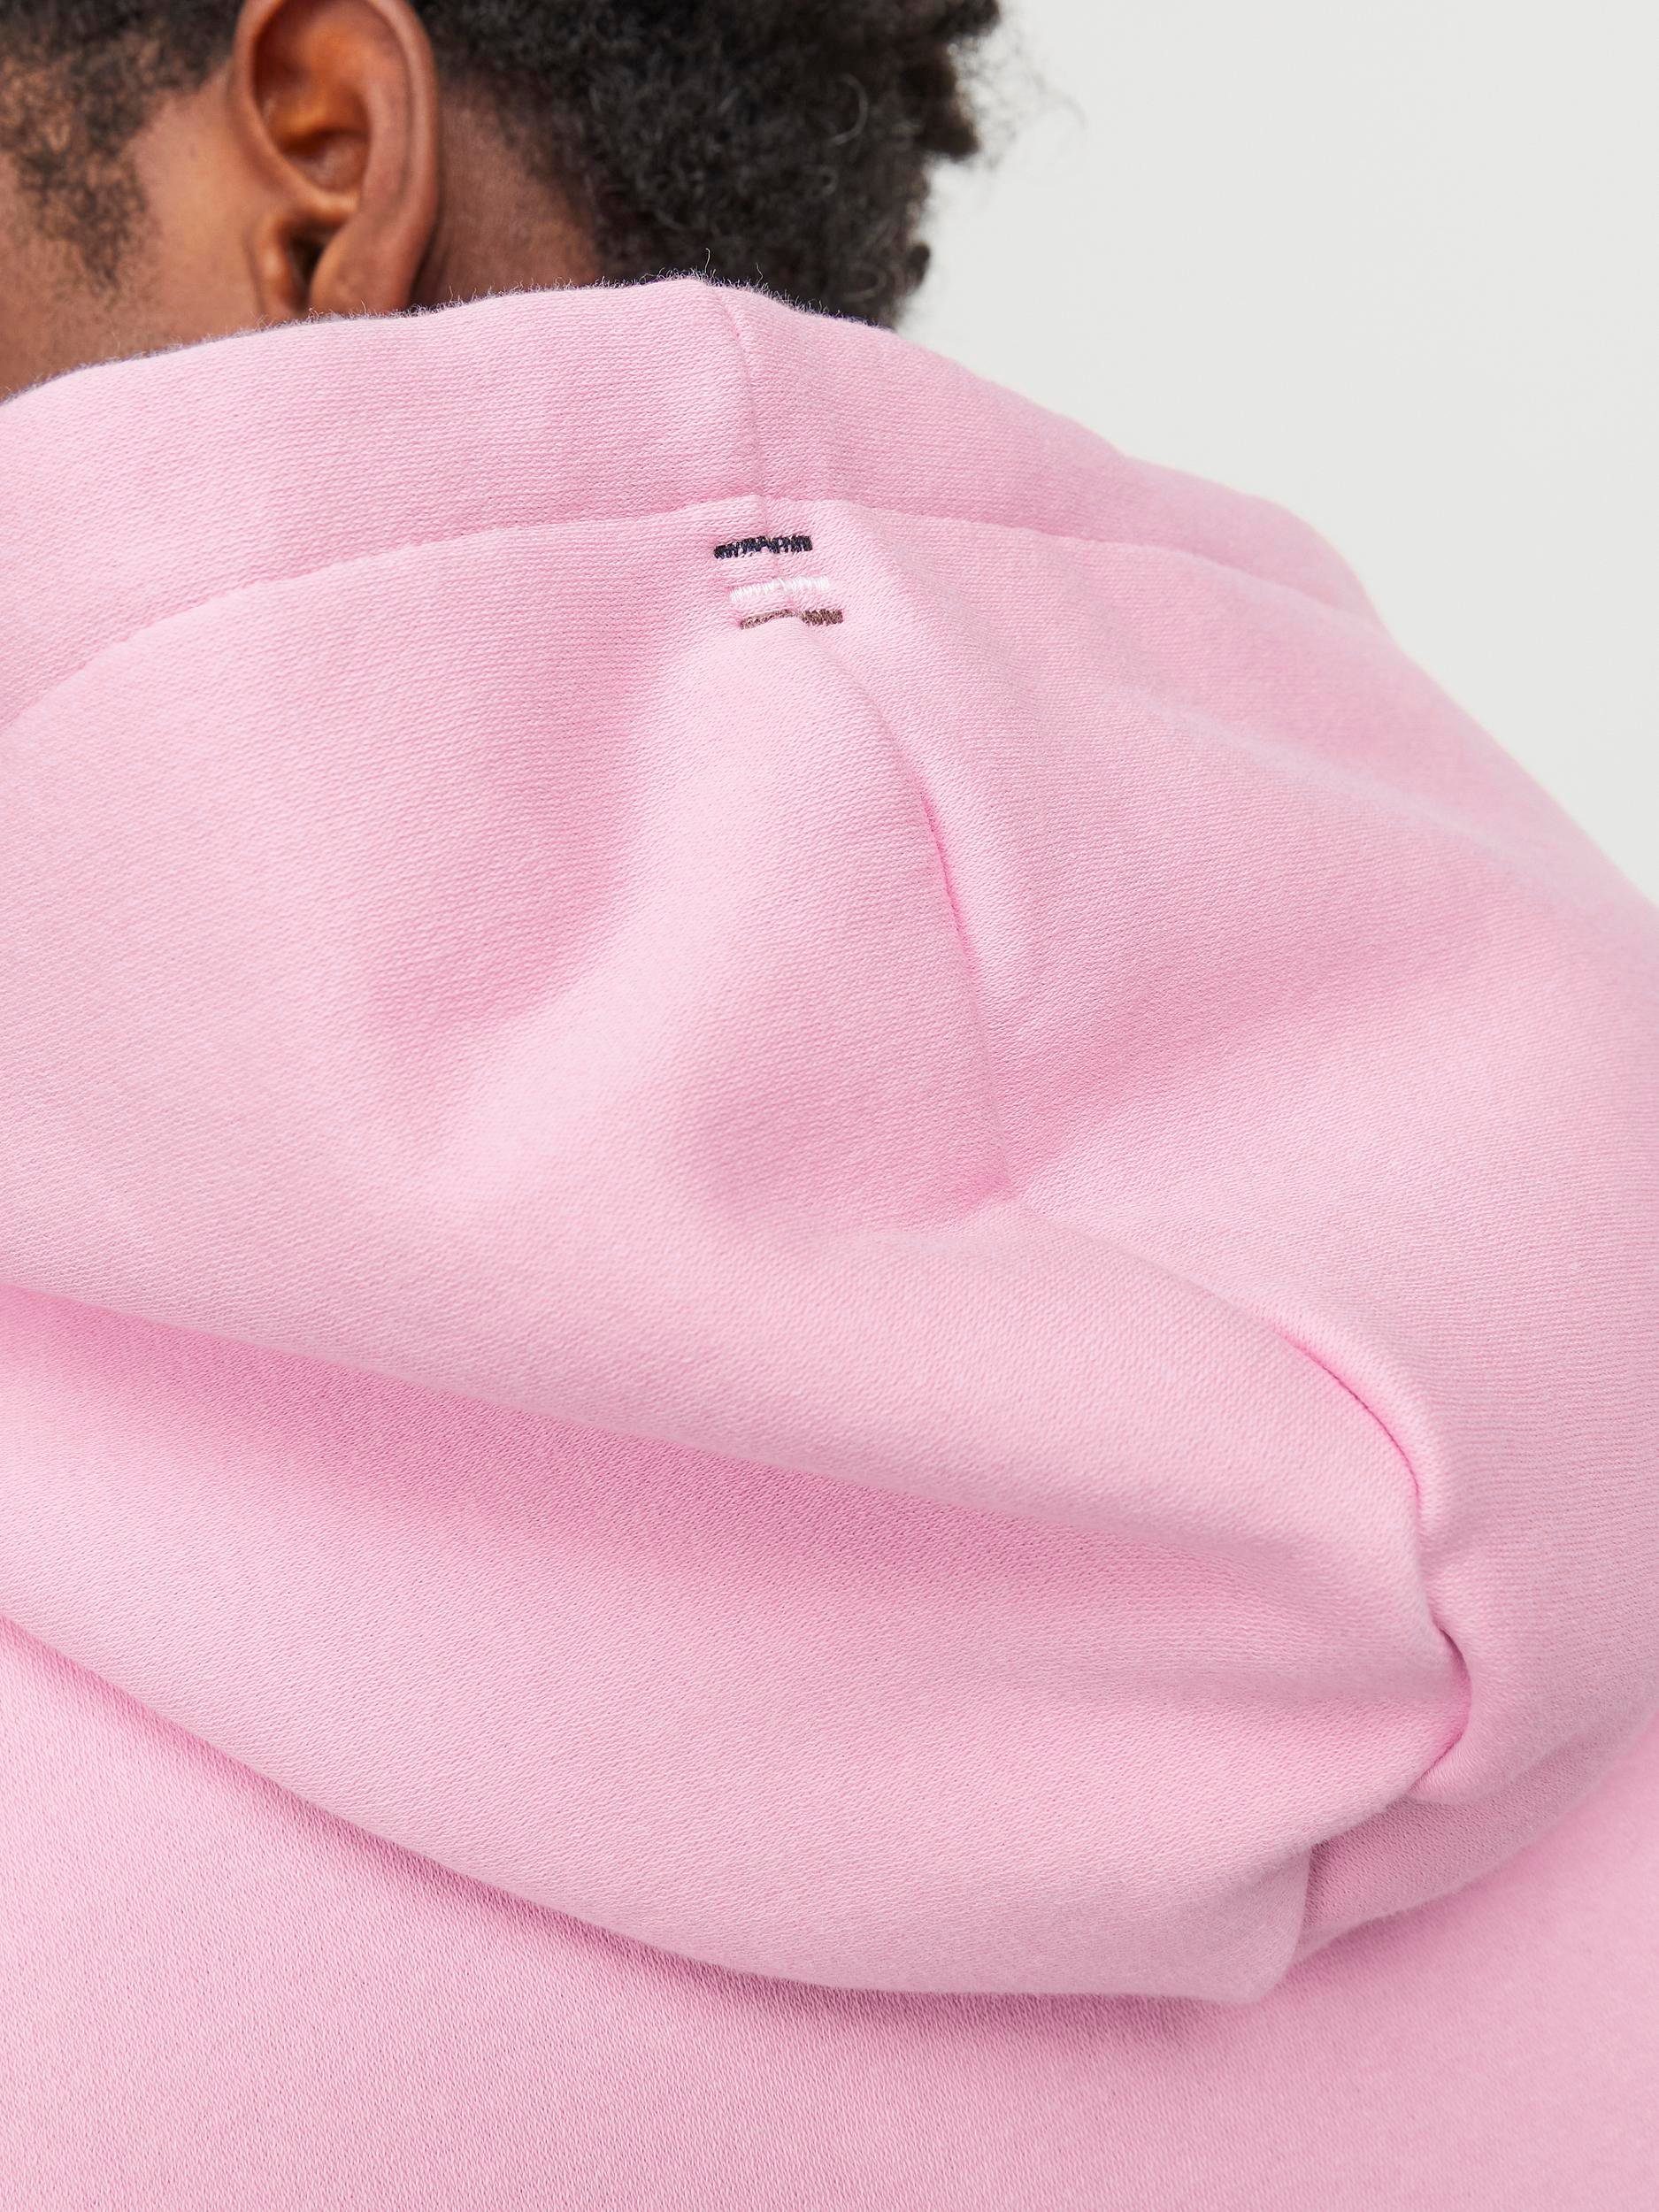 Jack & NOOS HOOD Jones Kapuzensweatshirt JPRBLUARCHIE Prism Pink SWEAT